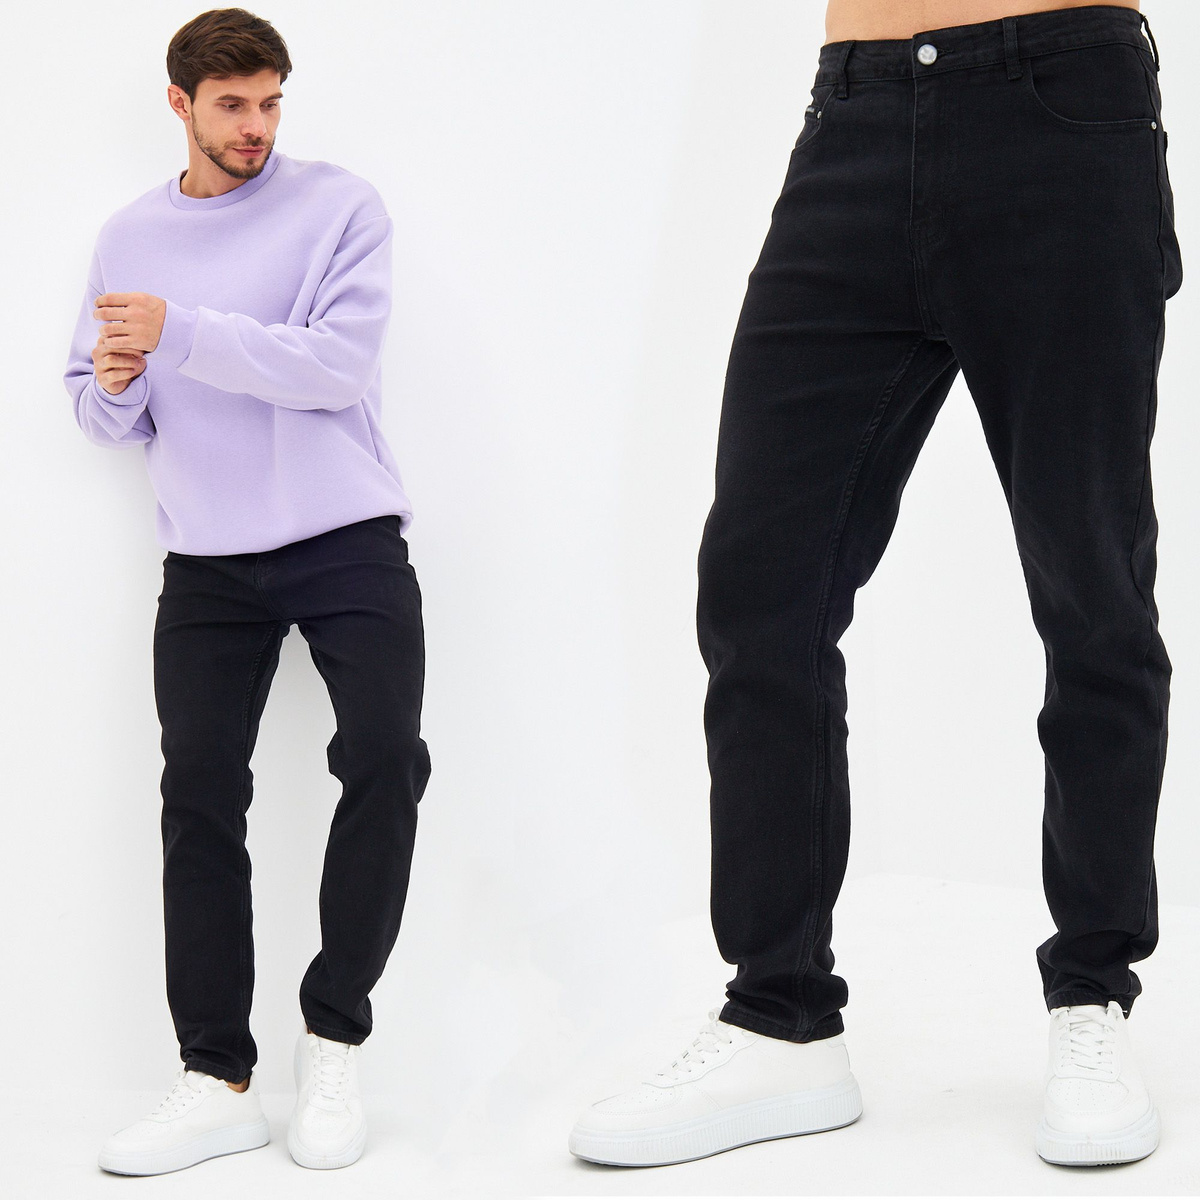 Плотные и прочные джинсы не сковывают движения, за счет эластана создают небольшой «стрейч эффект». Благодаря дышащей хлопковой ткани их можно носить круглый год. Мужские джинсы подойдут как подросткам, так и мужчинам постарше.